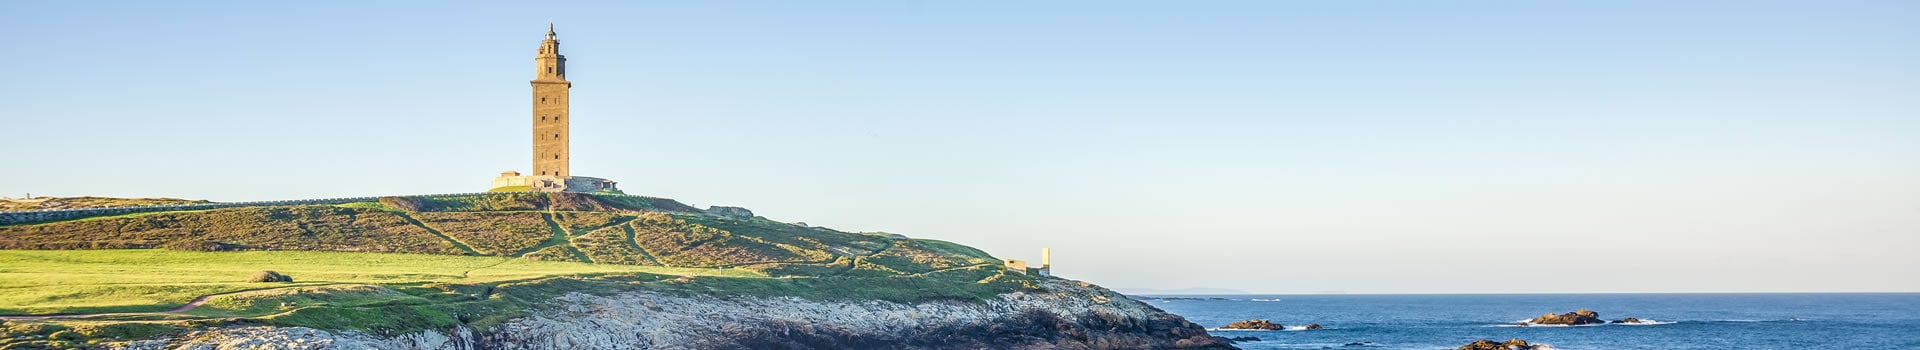 Menorca - La Coruña